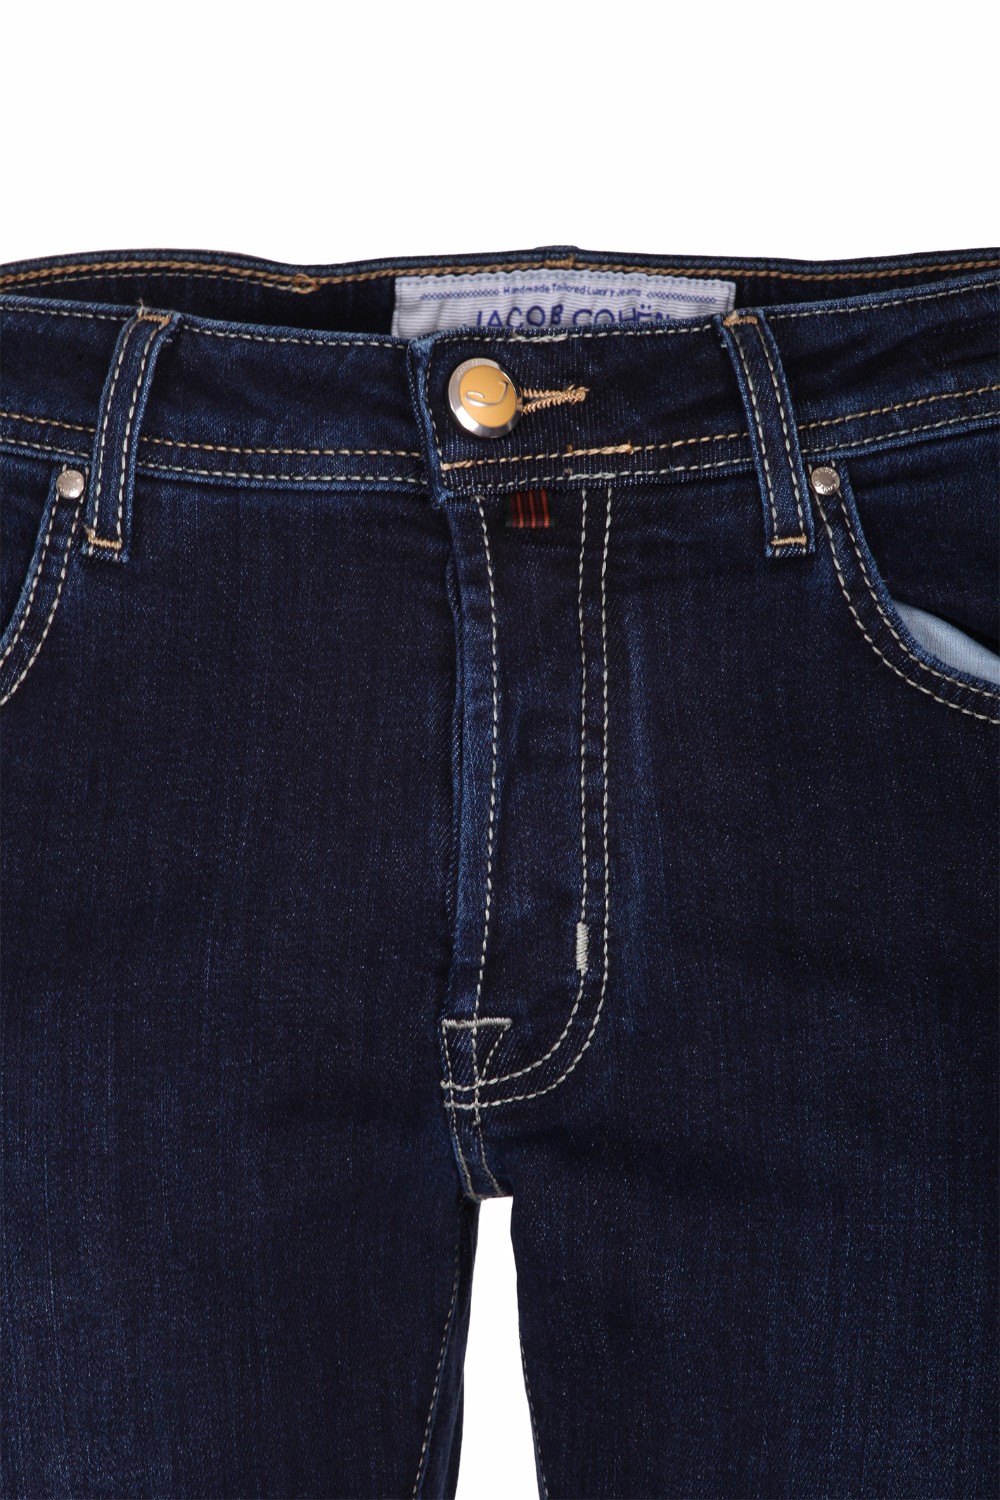 shop JACOB COHEN Saldi Jeans: Jacob Cohen jeans a gamba dritta in cotone blu.
Chiusura con zip e bottone.
Modello cinque tasche.
Lunghezza alla caviglia.
Composizione: 95% cotone 3% poliestere 2% elastan.
Made in Italy.. J688 COMF 00709 W-001 number 5990267